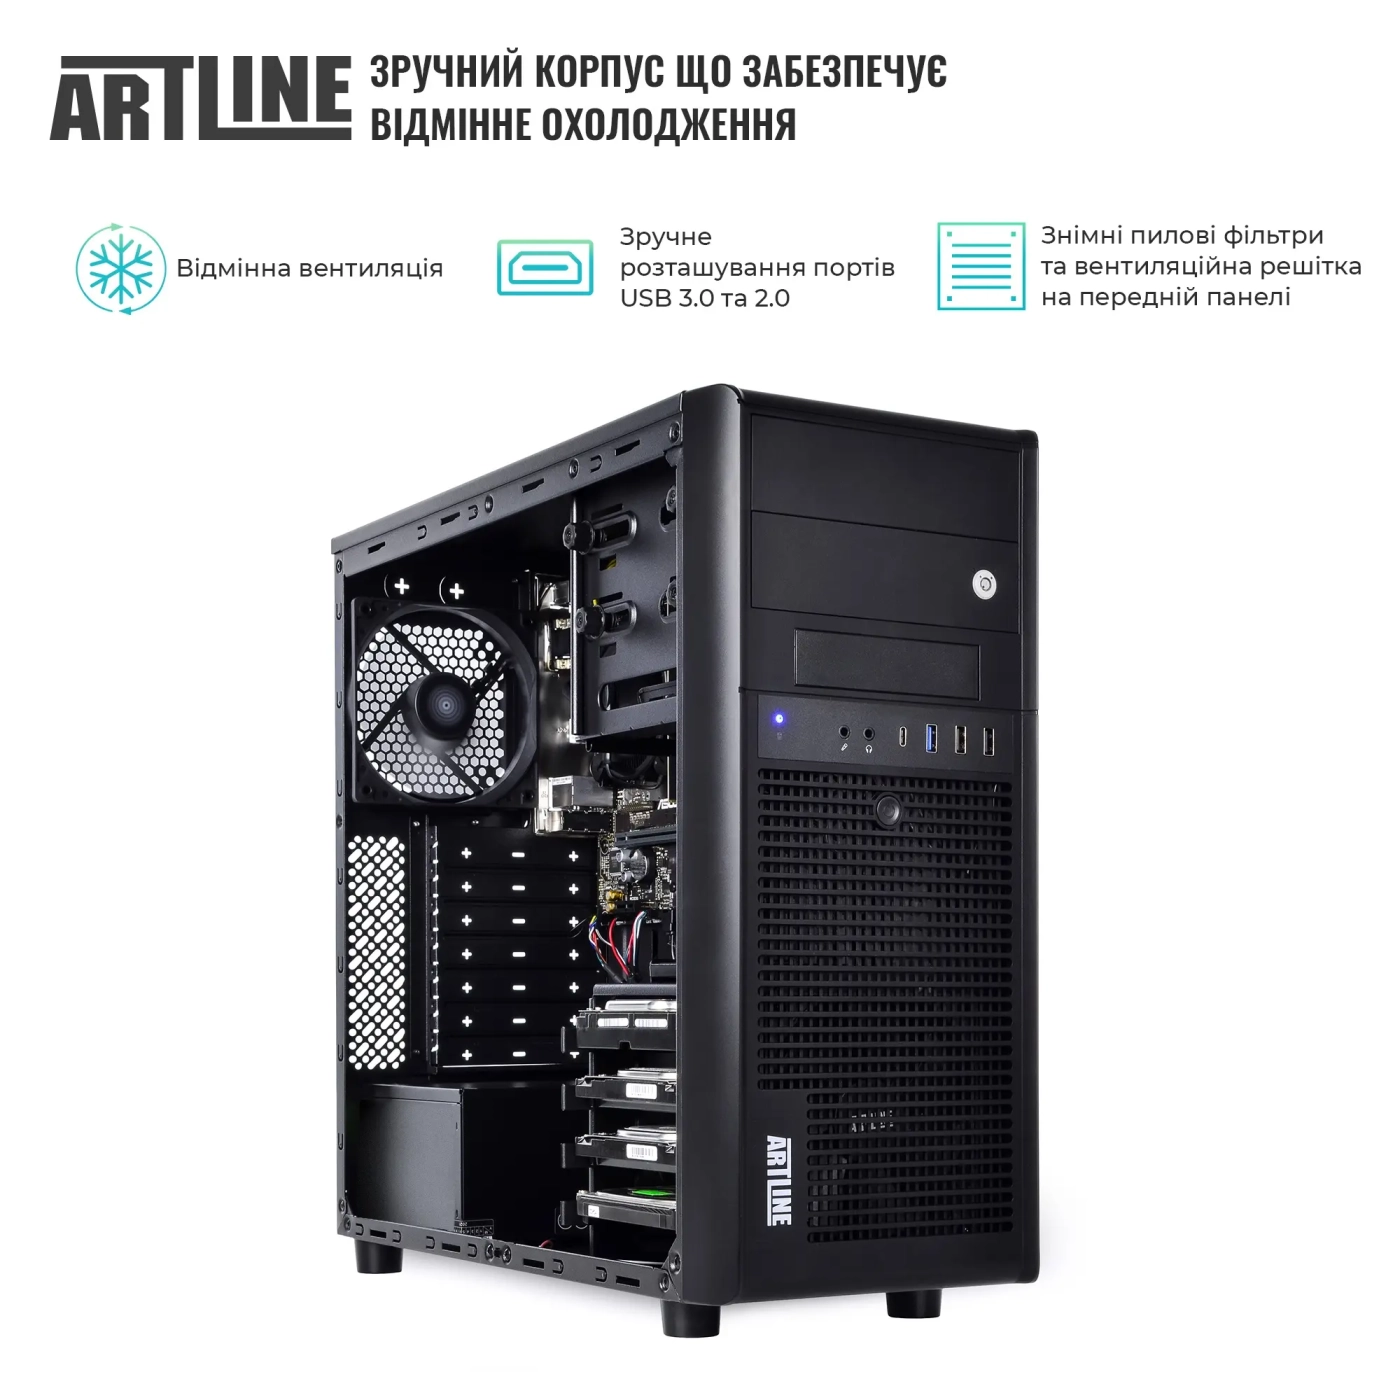 Купить Сервер ARTLINE Business T38 (T38v16) - фото 3